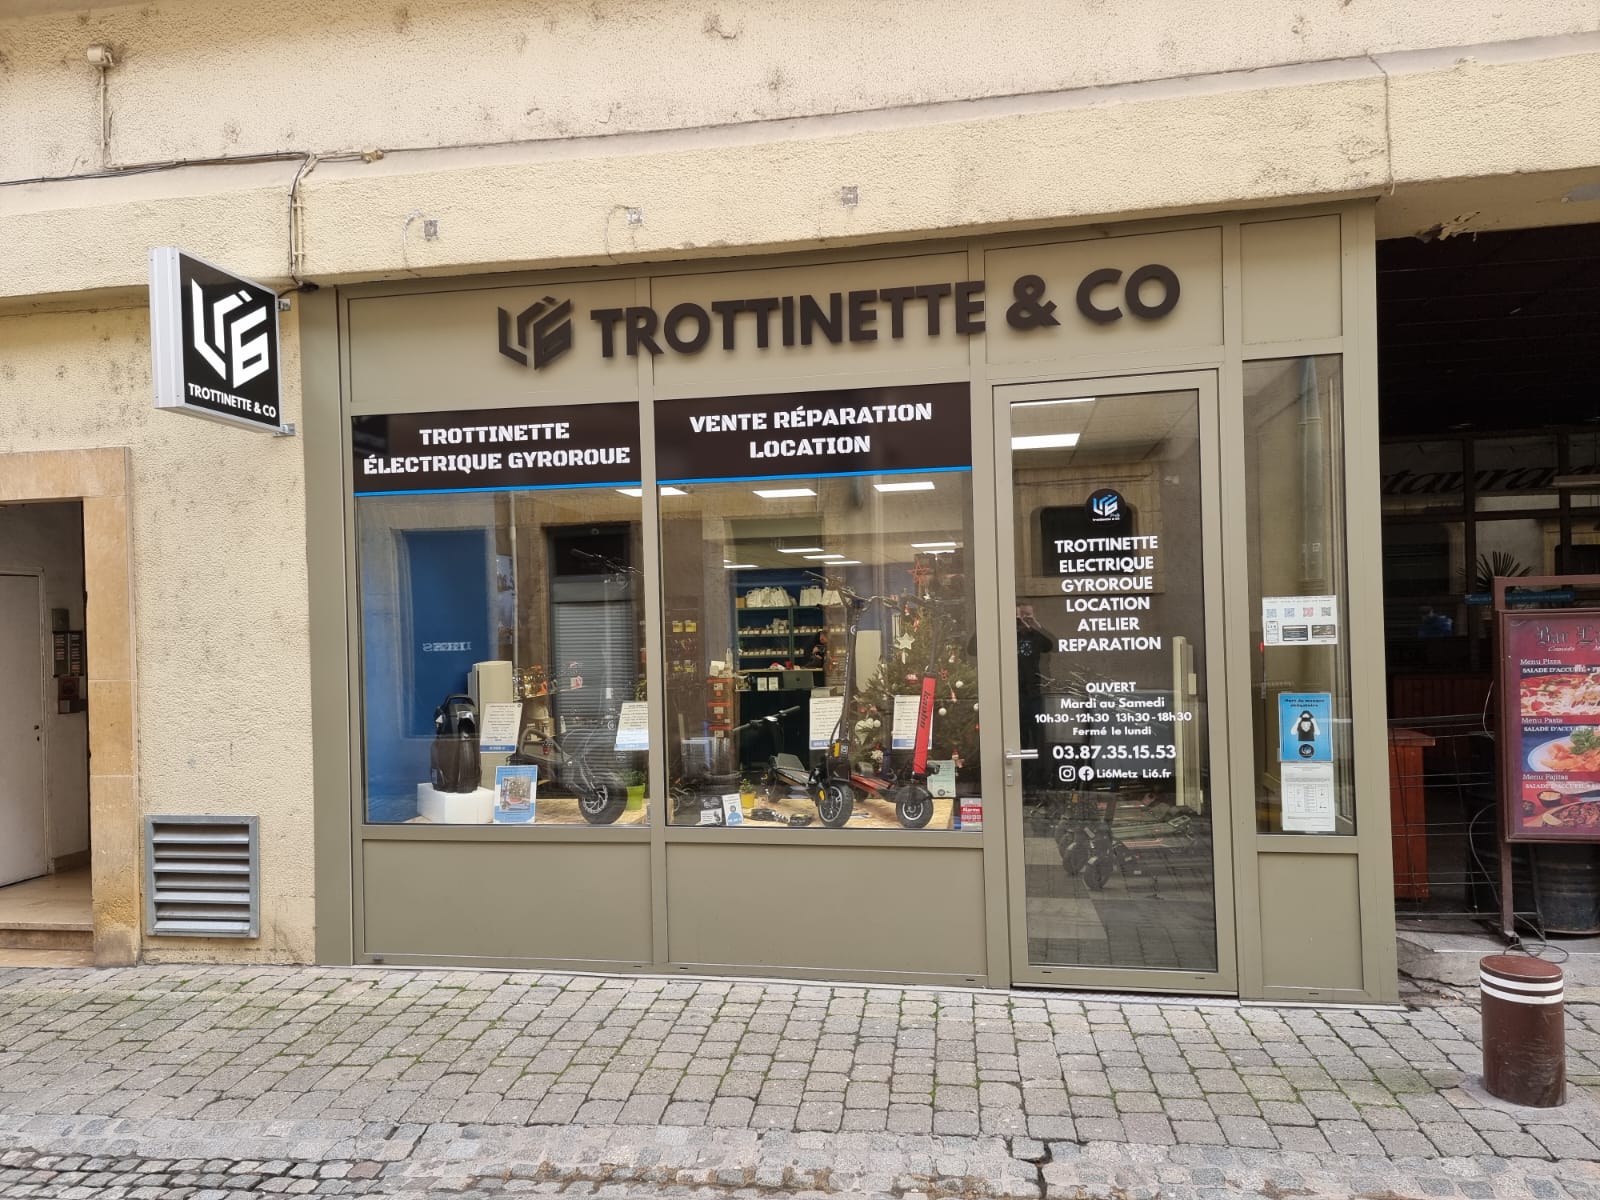 Support téléphone trottinette électrique - Li6 trottinette & Co Reims, Metz  et Nancy